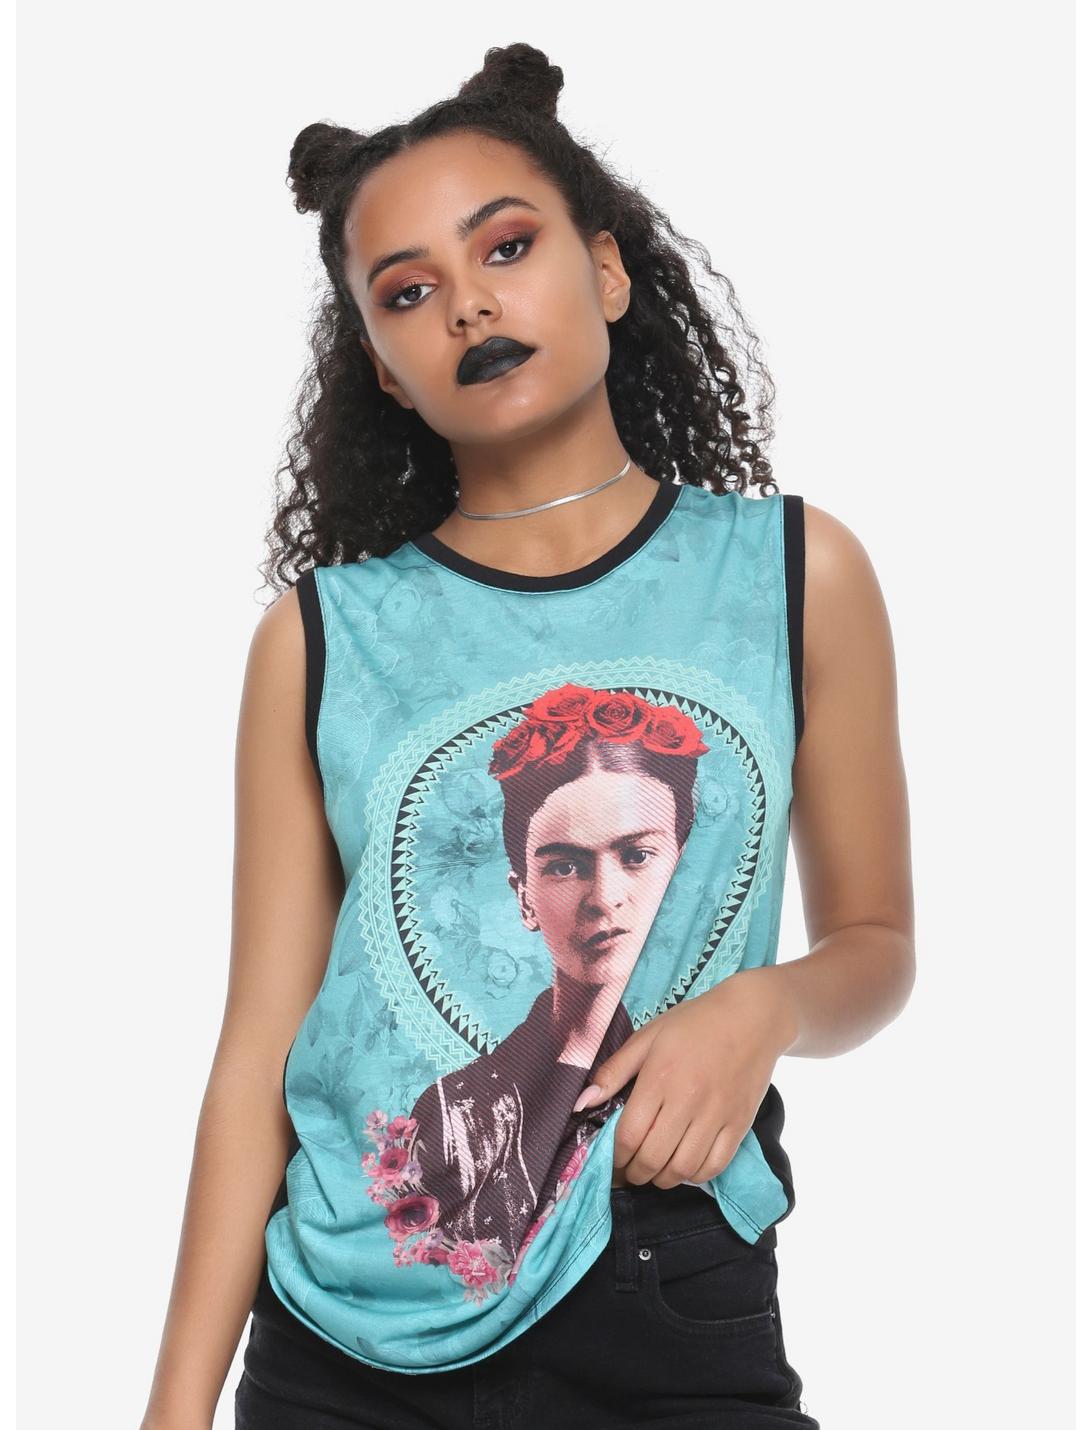 Frida Kahlo Roses Girls Muscle Top, TEAL, hi-res